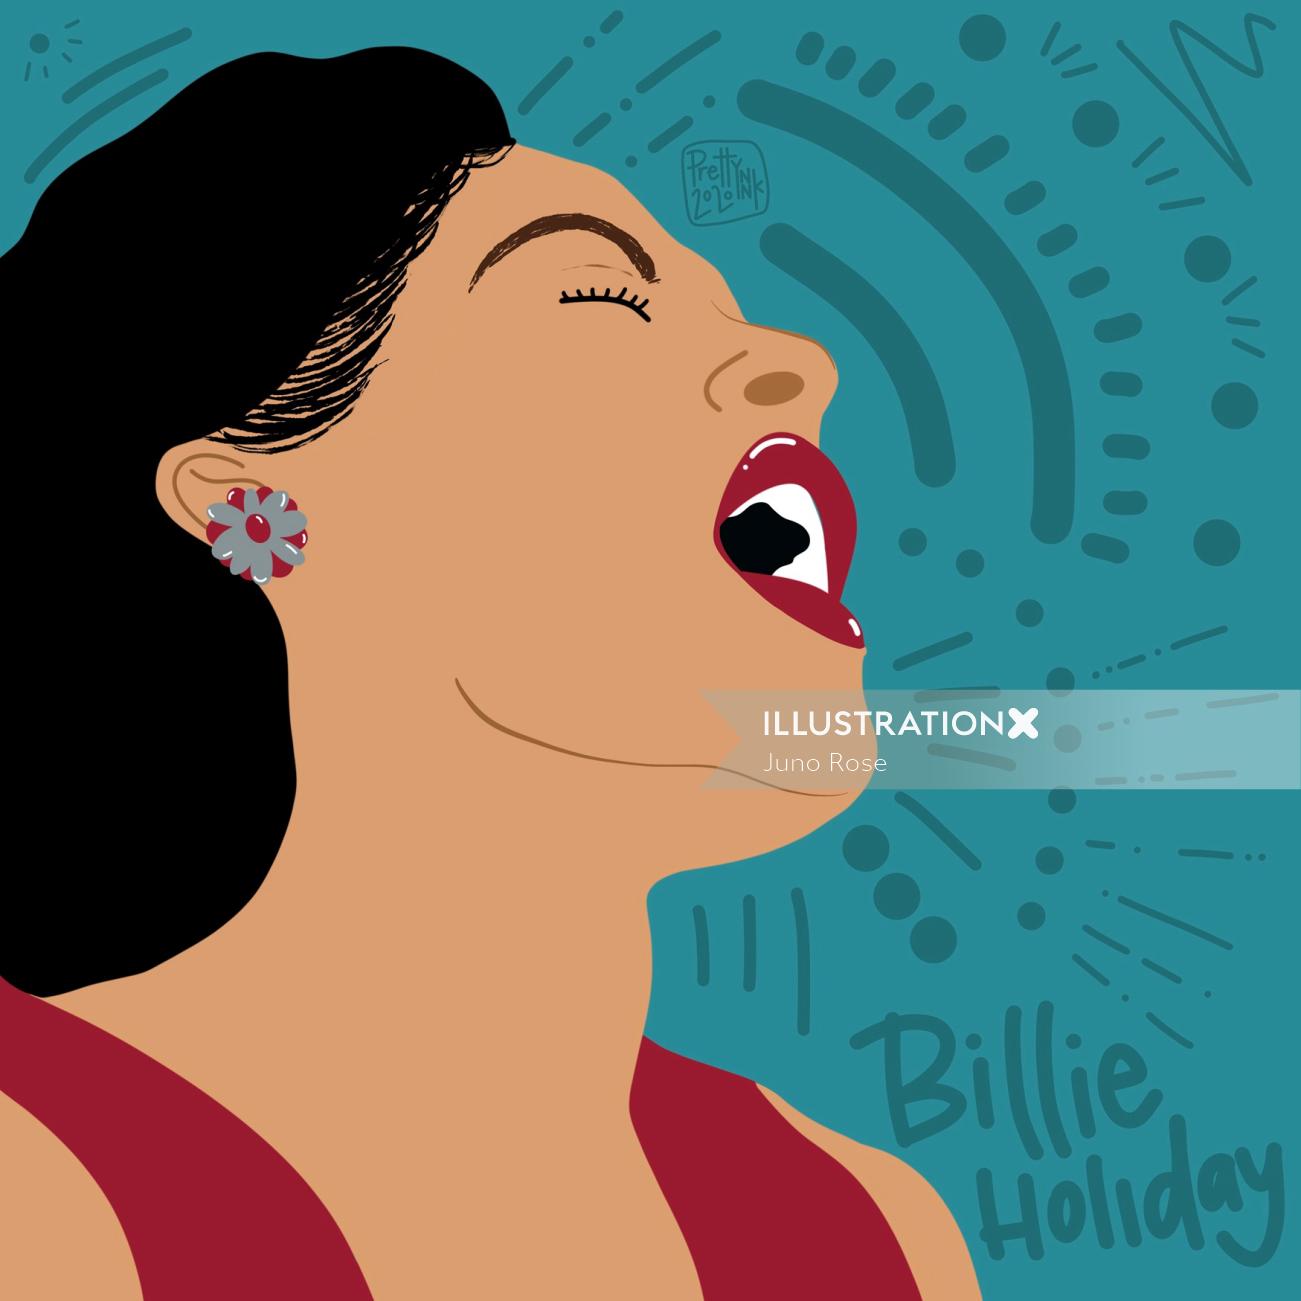 Portrait de Billie Holiday, chanteuse américaine